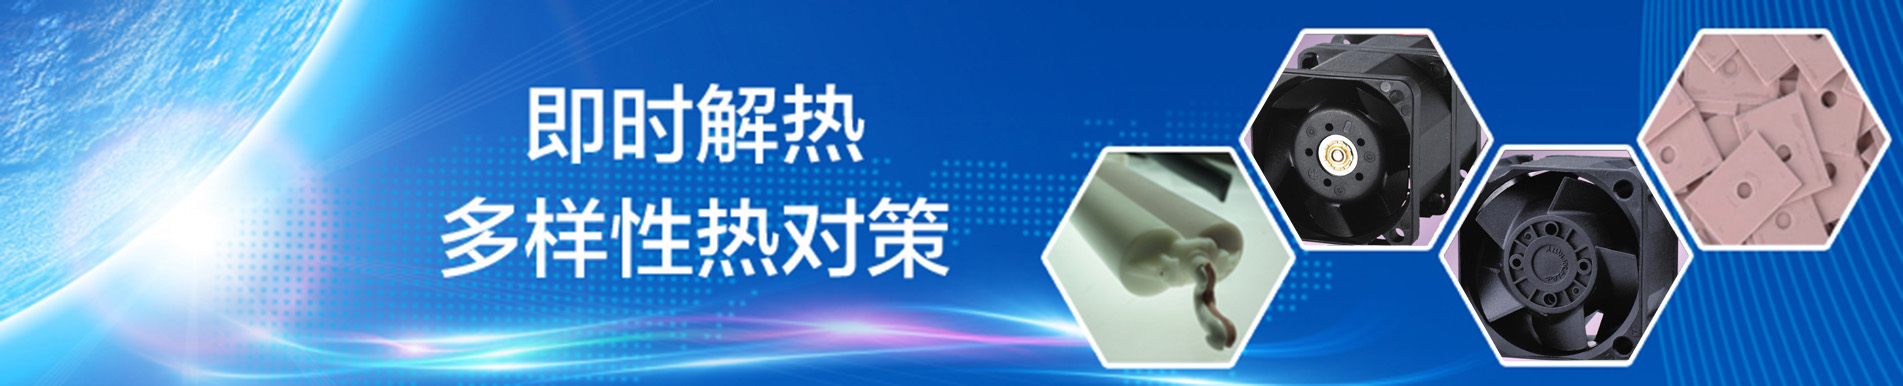 ADDA 温控环保型节能风扇 Smart AC Fan 隆重上市